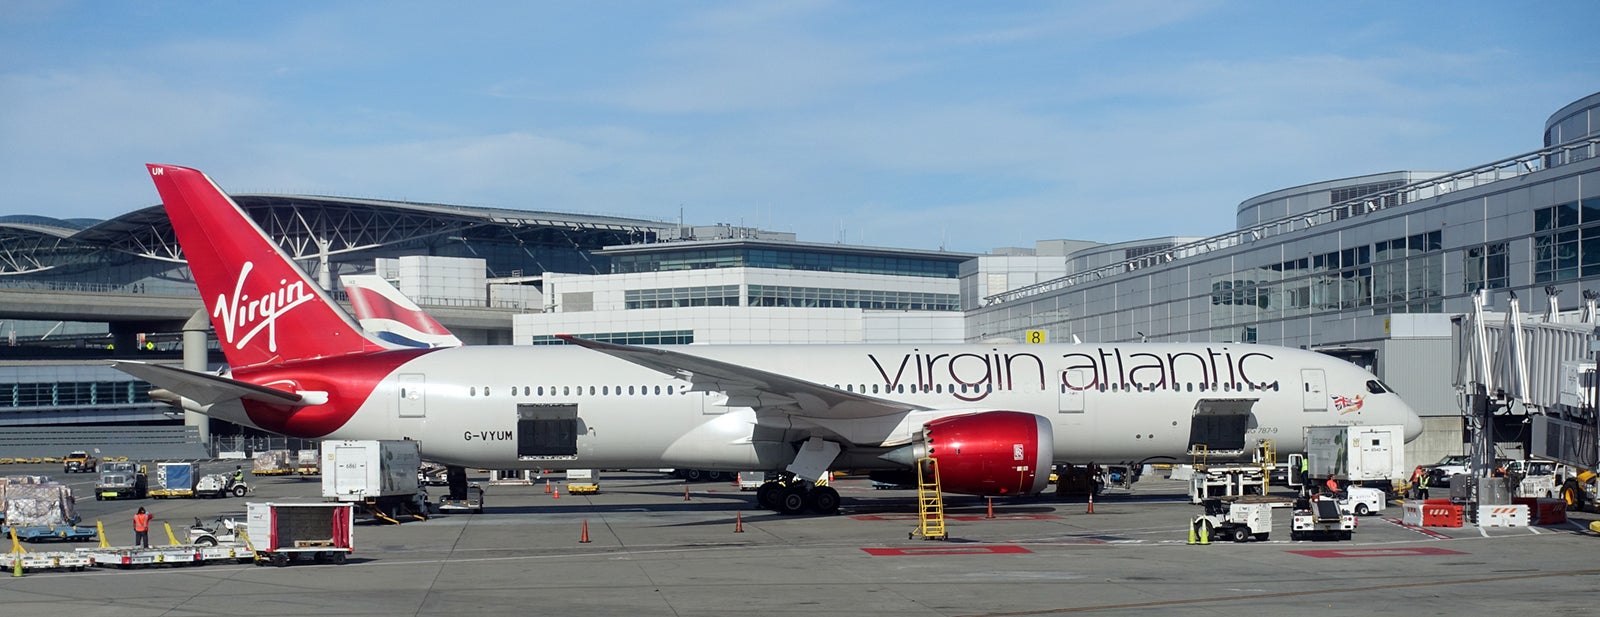 Virgin Atlantic 787-9 SFO